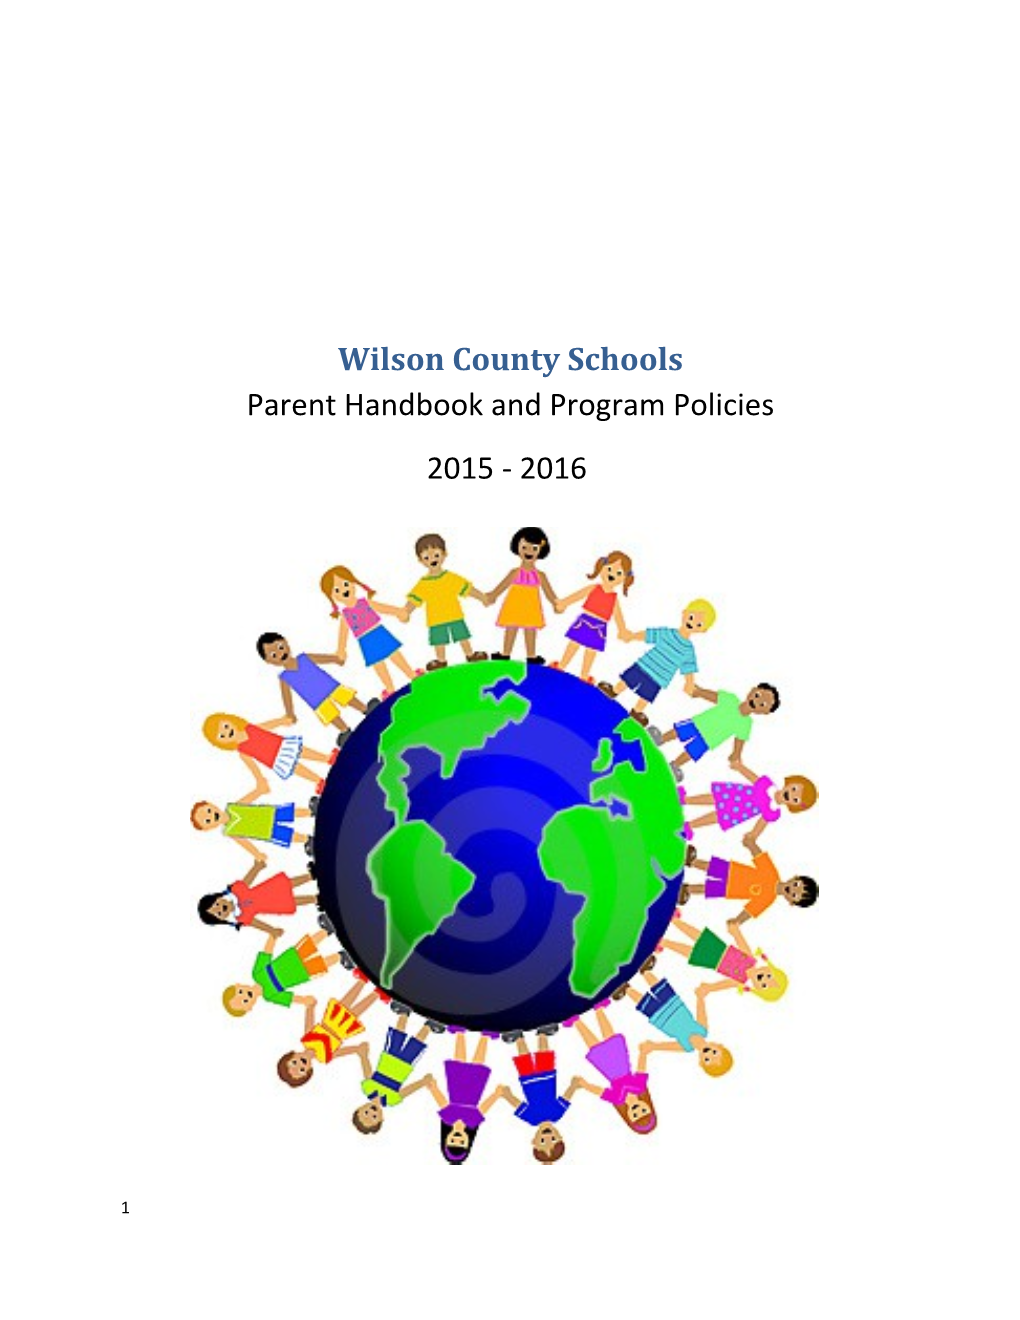 Wilson County Schools Parent Handbook and Program Policies